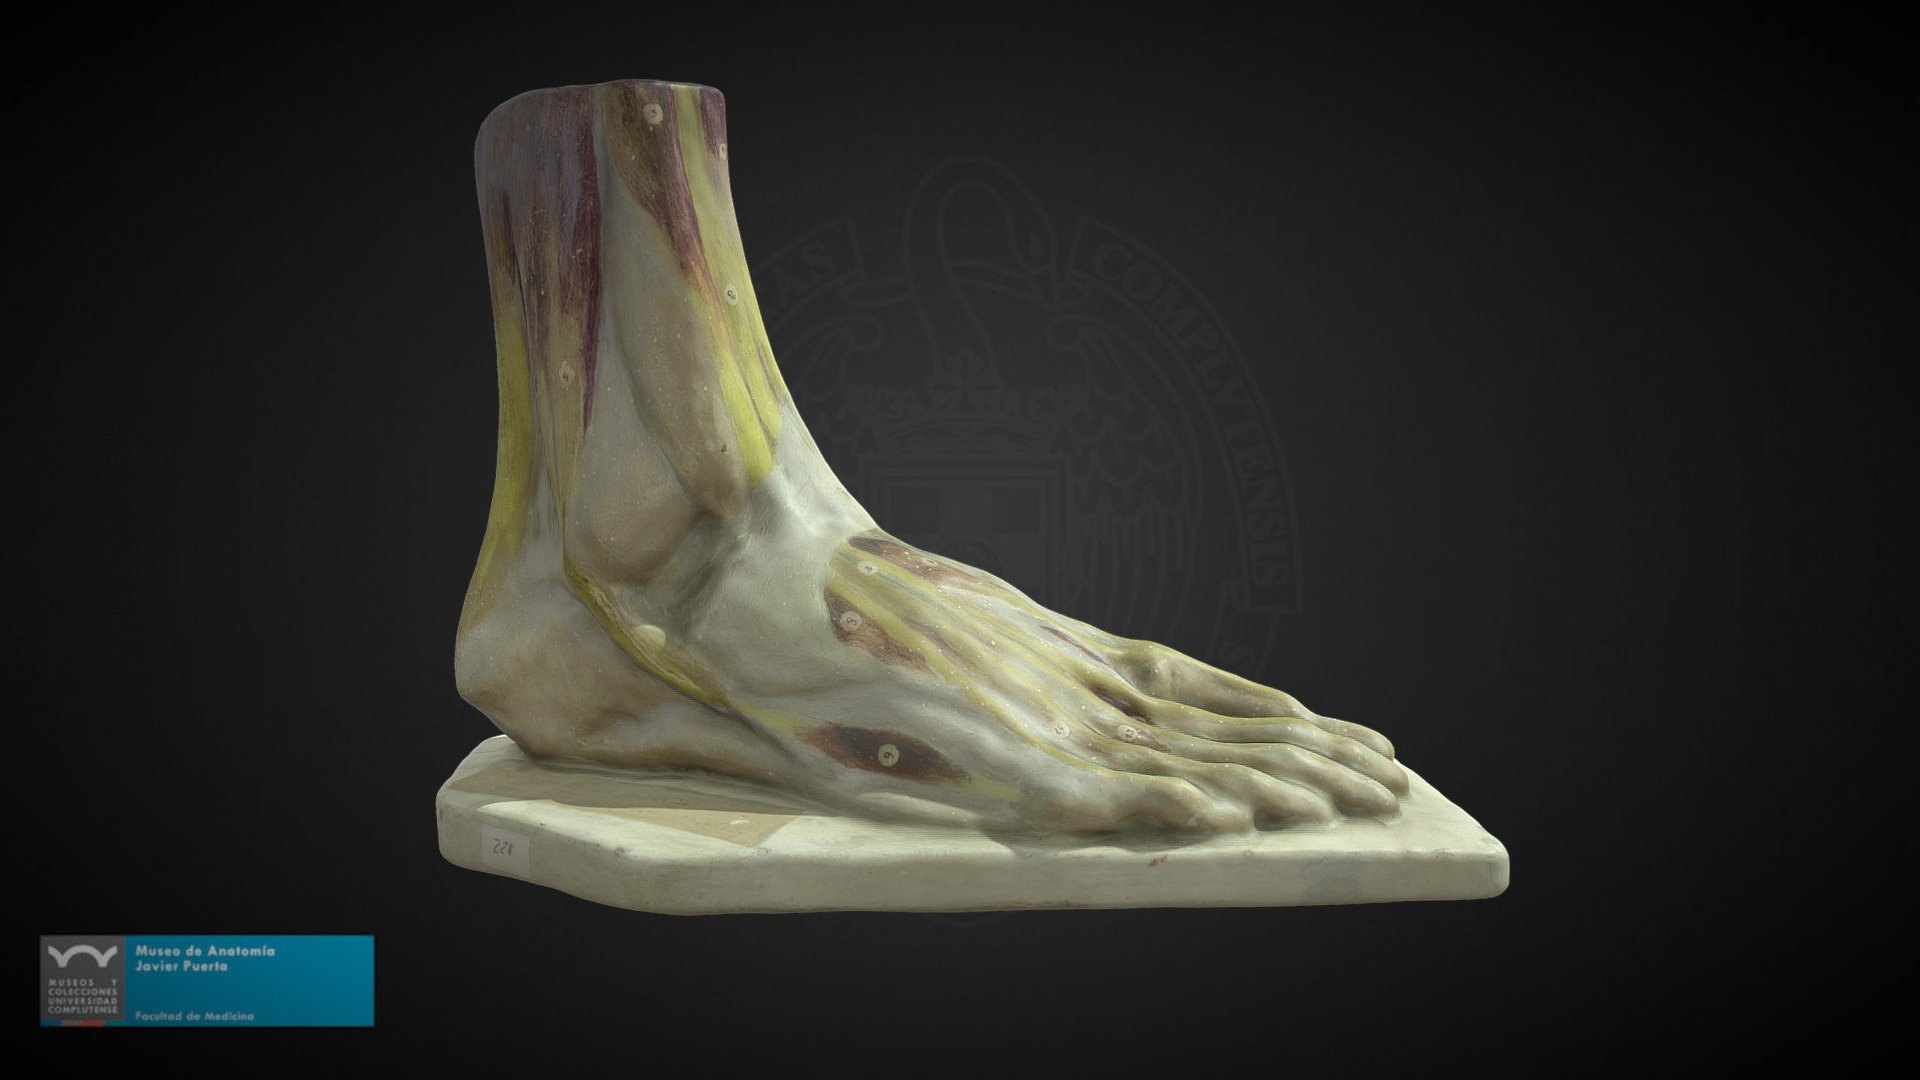 Modelo representando los músculos del pie. Figura original de escayola policromada conservada en el Museo de Anatomía &ldquo;Javier Puerta